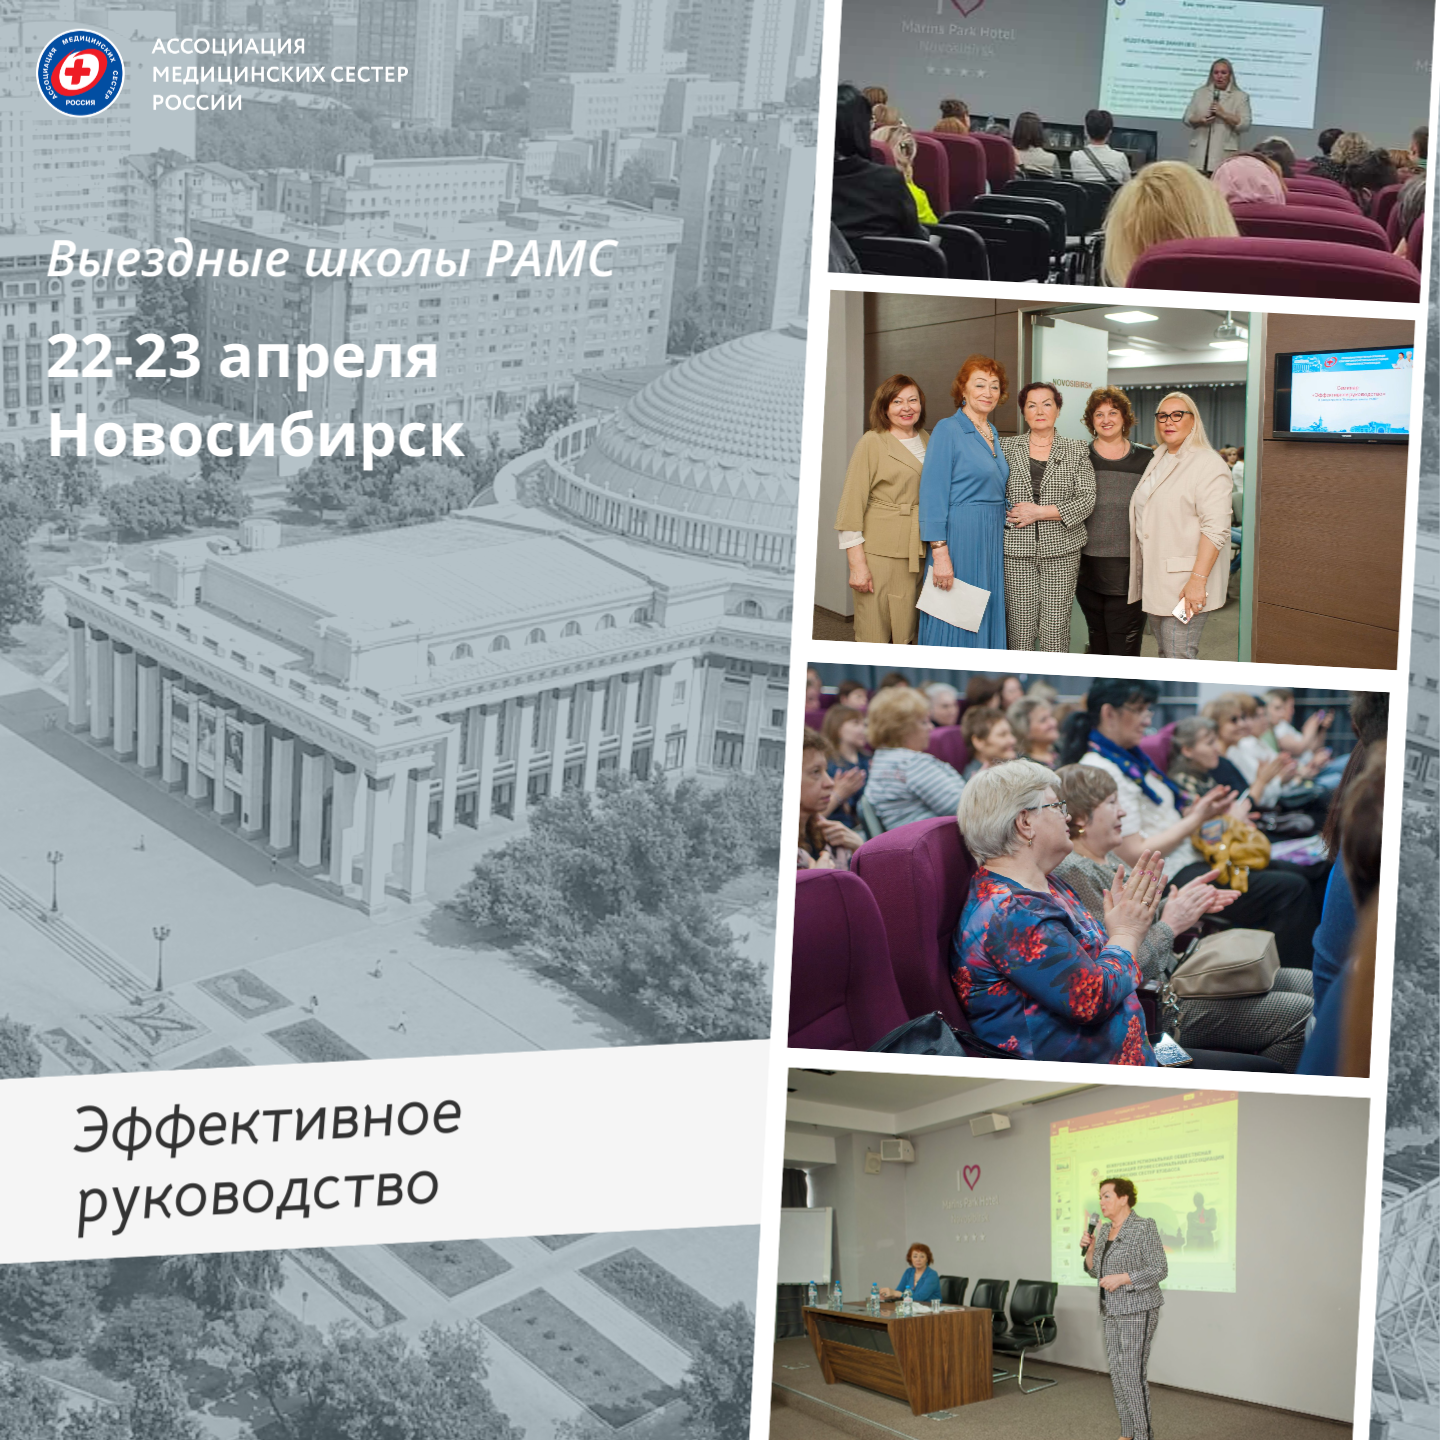 Выездная школа РАМС "Эффективное управление" прошла в Новосибирске